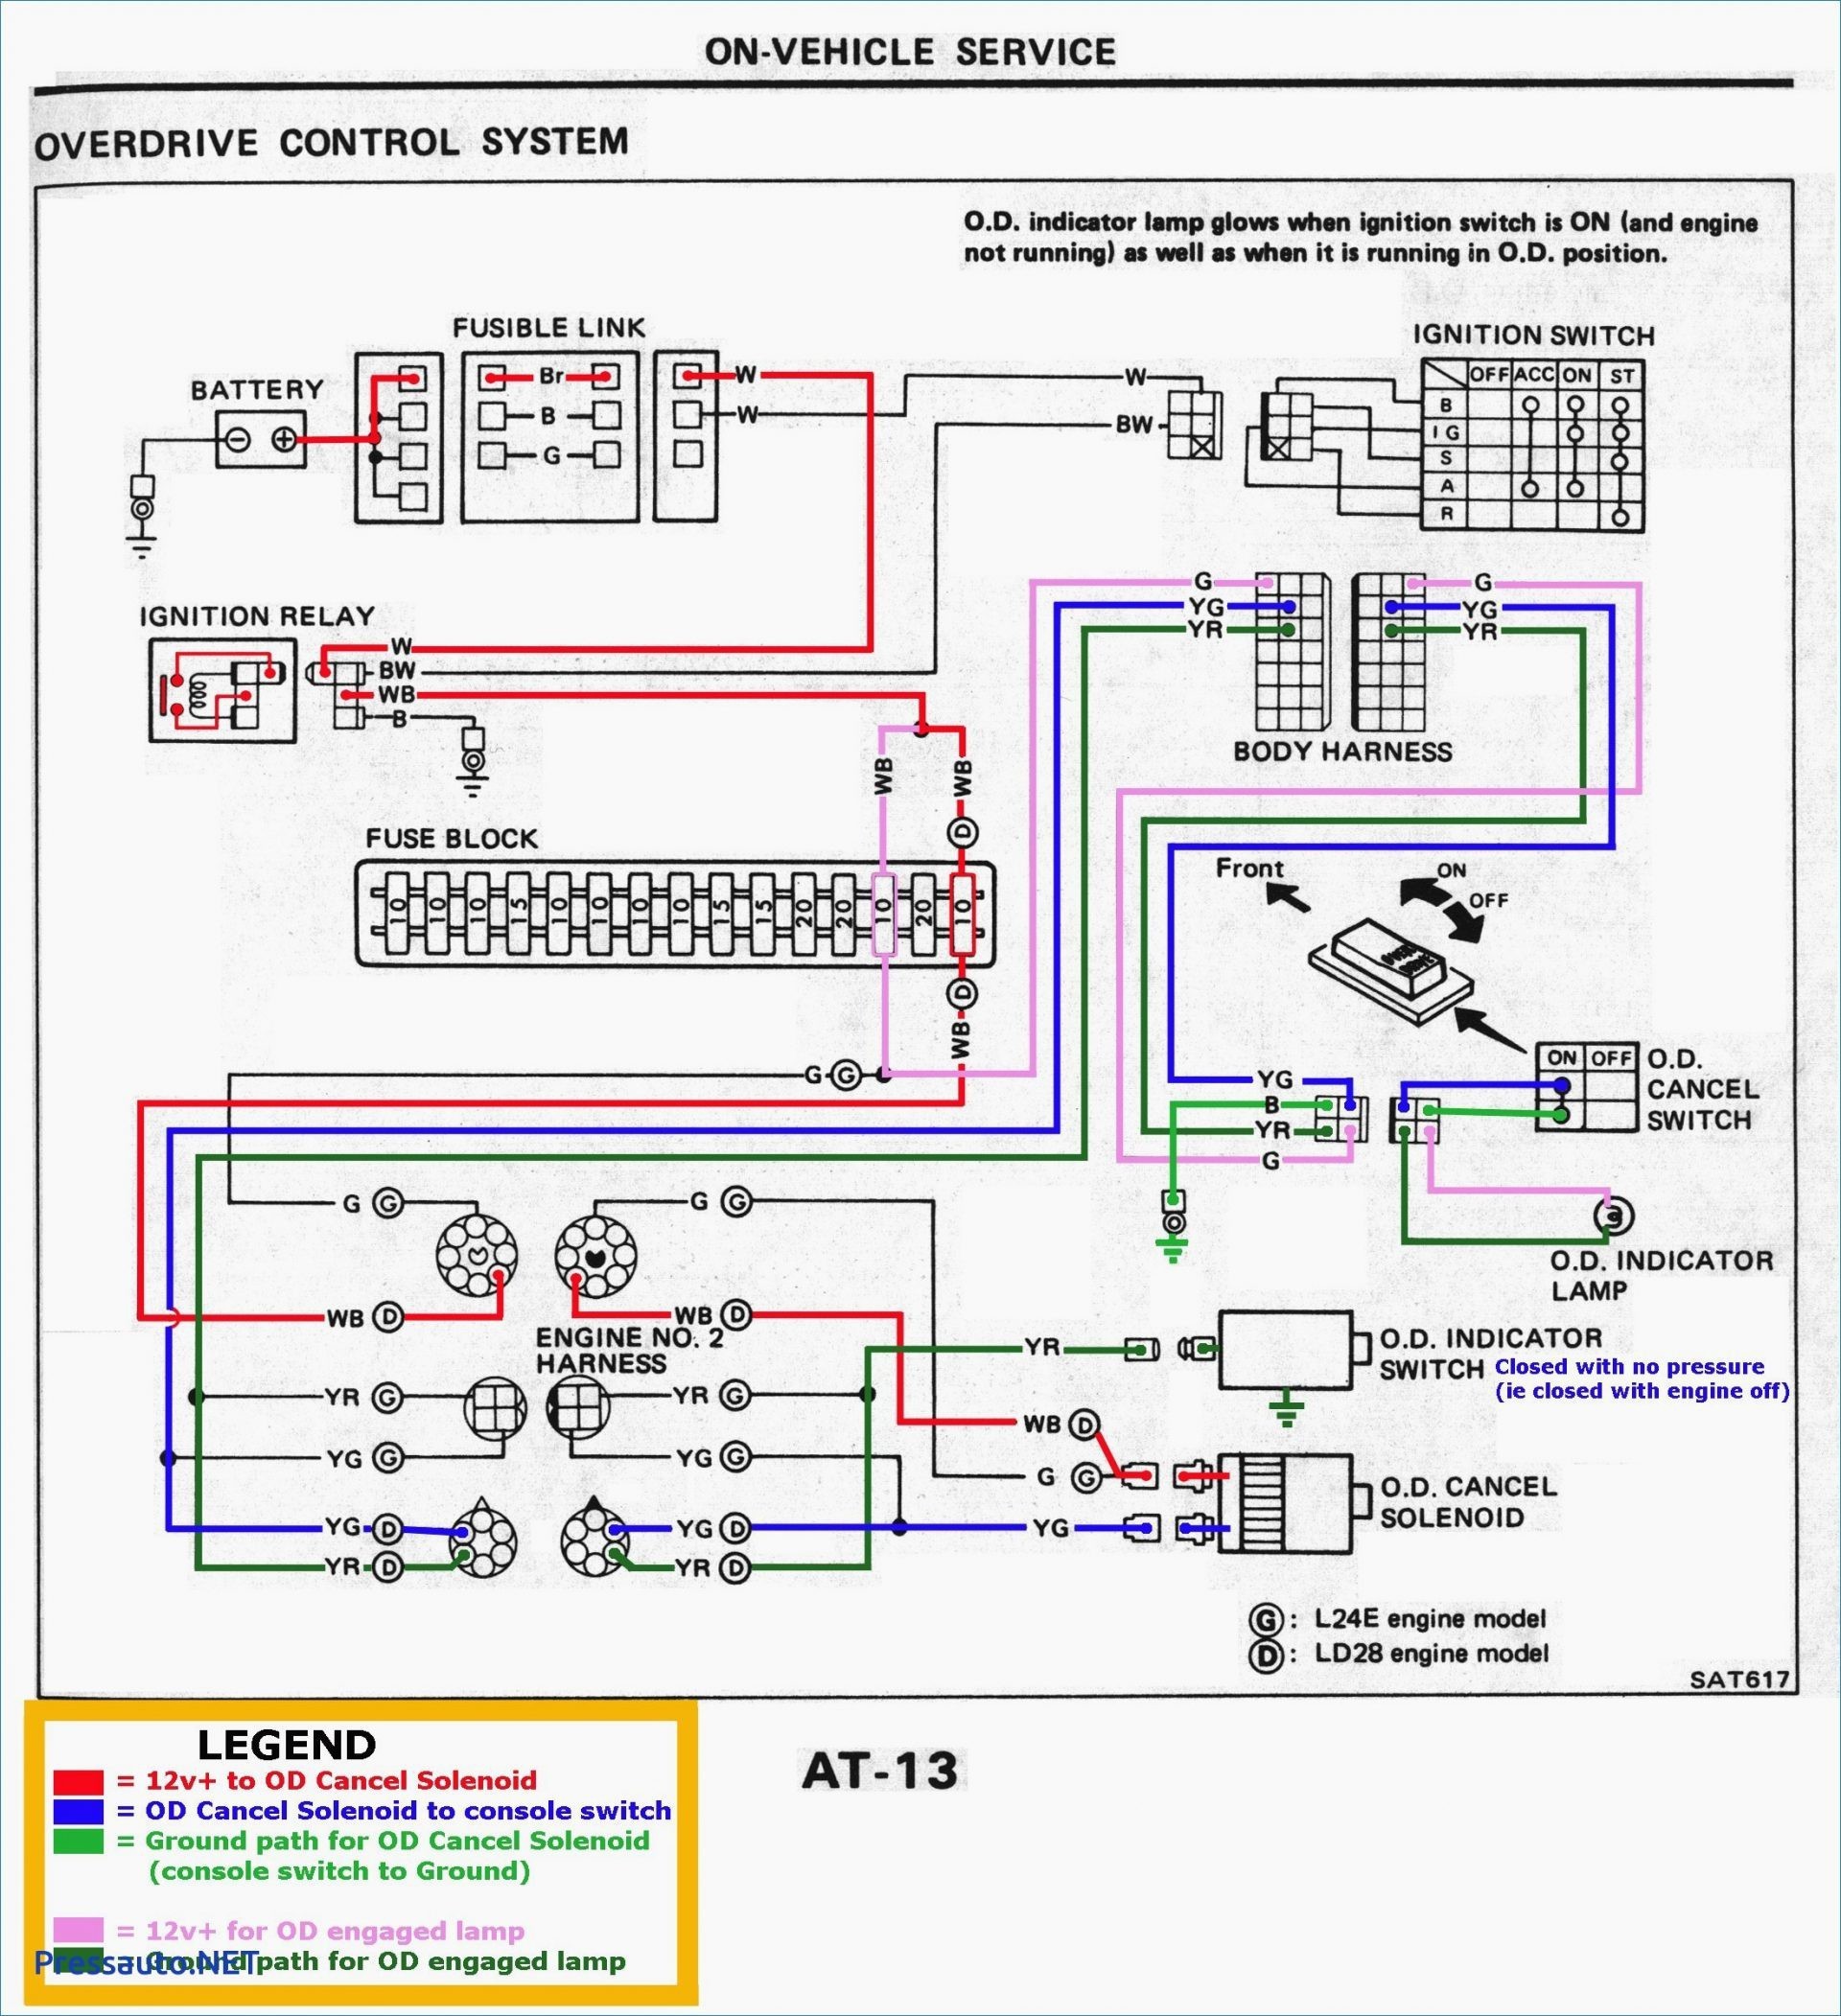 2001 Chevy Silverado Neutral Safety Switch Wiring Diagram New 2001 Chevy Silverado Neutral Safety Switch Wiring Diagram Starter Wi